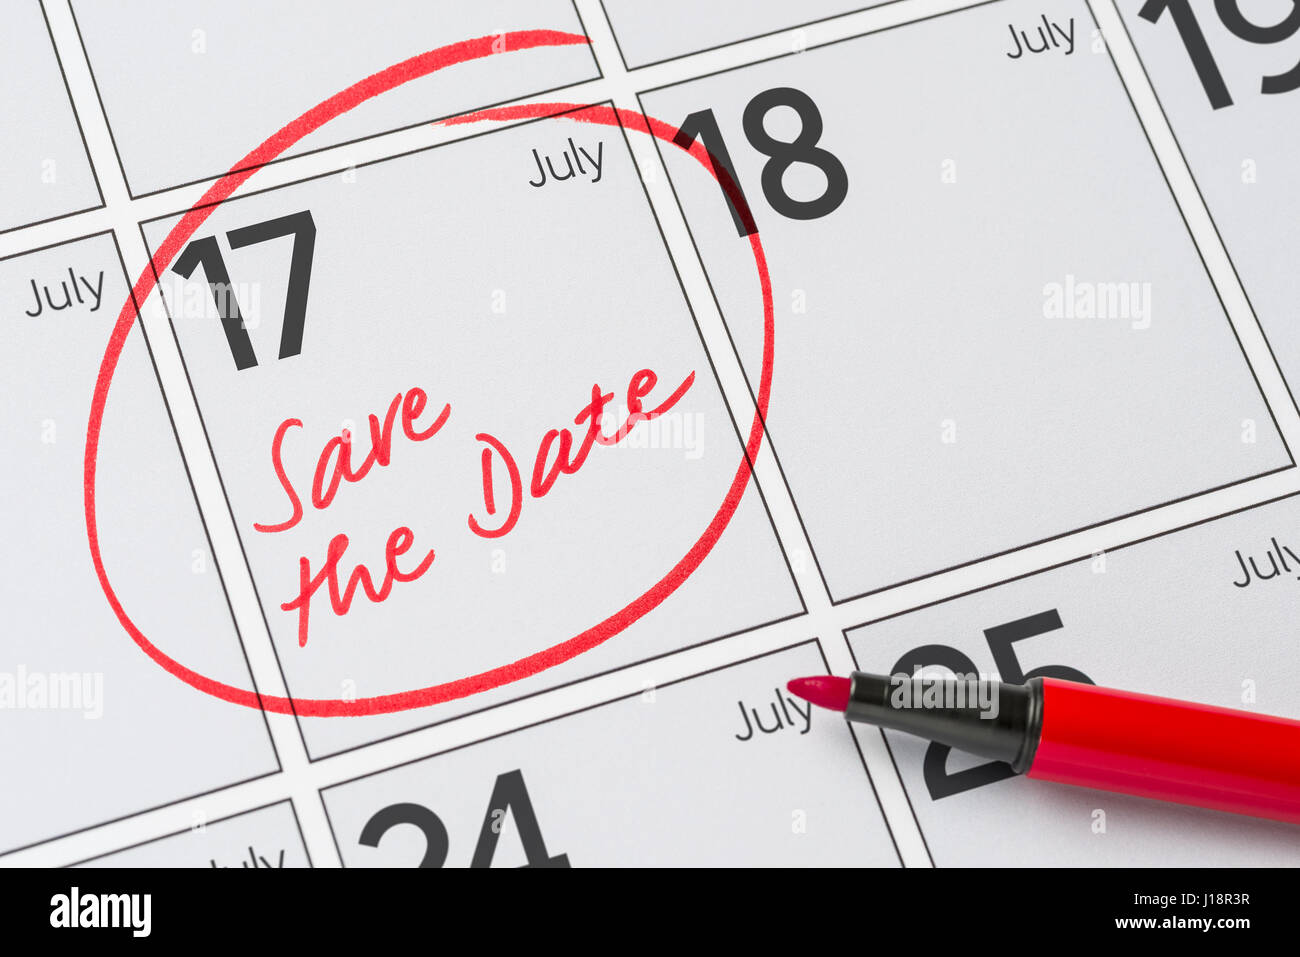 Enregistrer la date inscrite sur un calendrier - Juillet 17 Banque D'Images